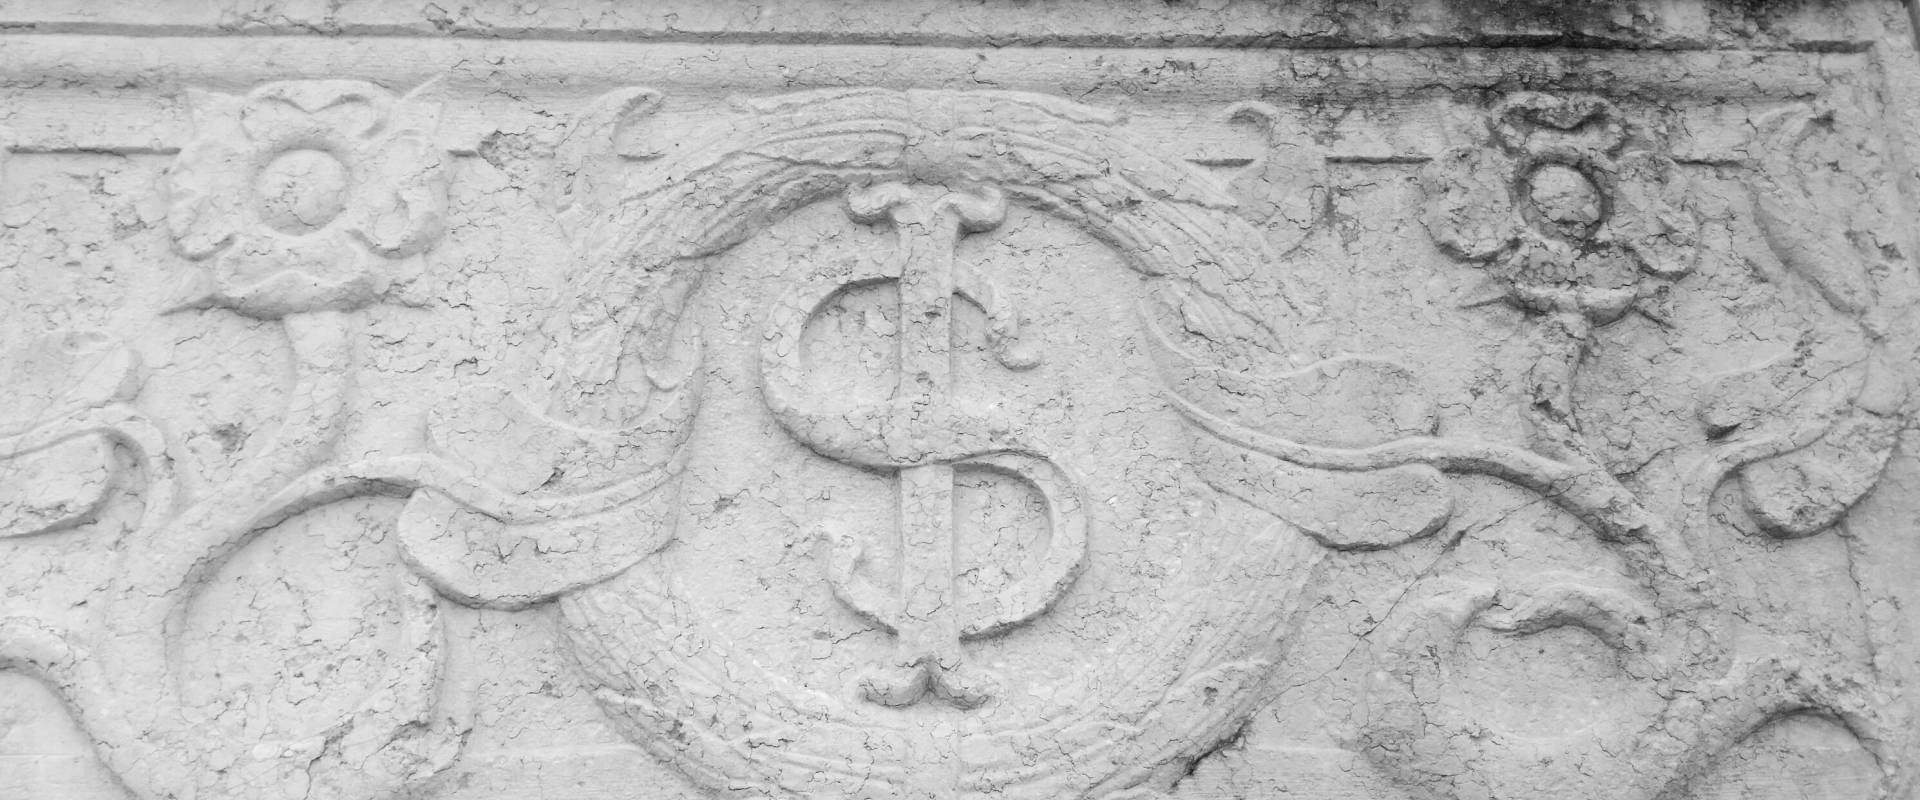 Particolare facciata simbolo Sigismondo - Tempio Malatestiano photo by Opi1010